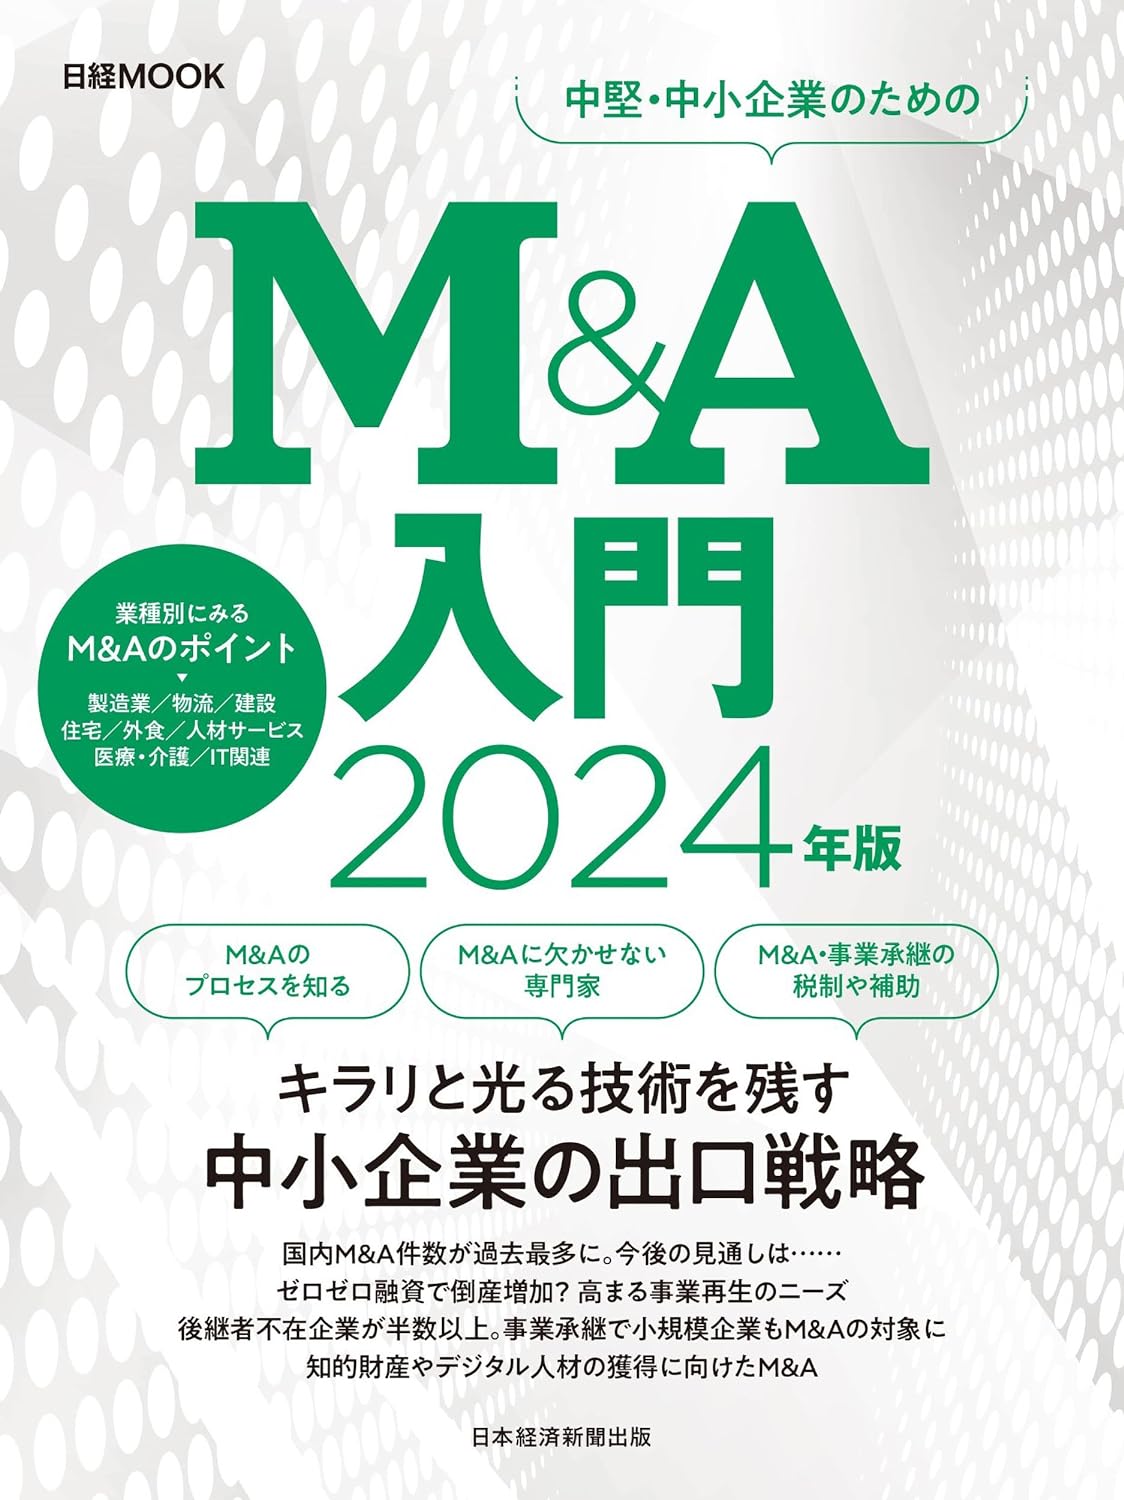 2023年更新】【M&A | 本・書籍】M&A関連のおすすめ本・書籍一覧 | M&A